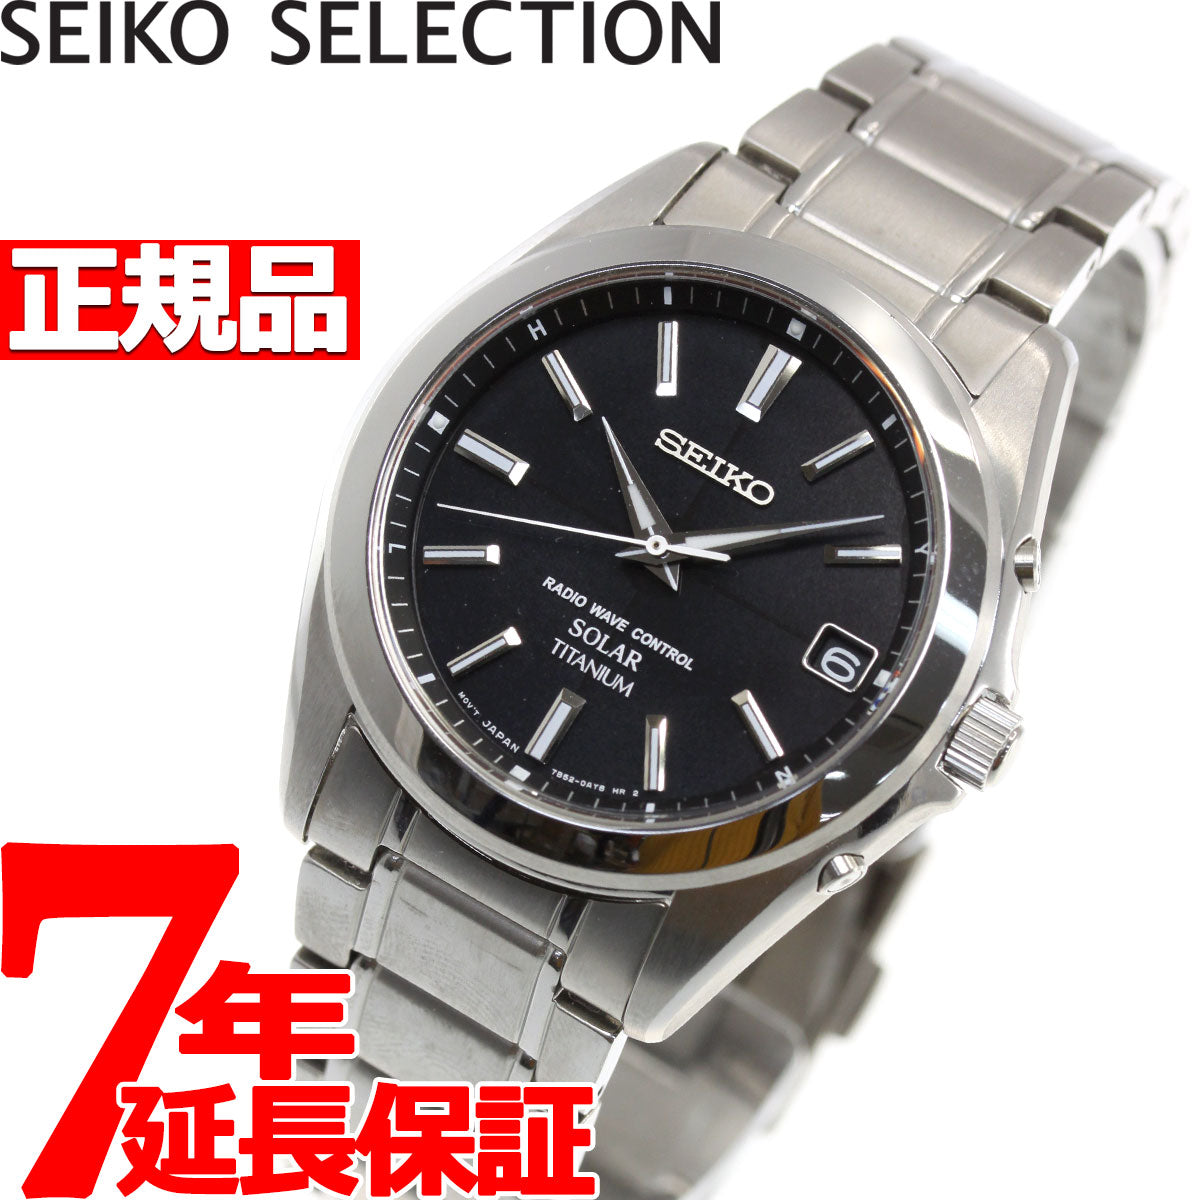 セイコー セレクション SEIKO SELECTION 電波 ソーラー 電波時計 腕時計 メンズ SBTM217 – neel selectshop